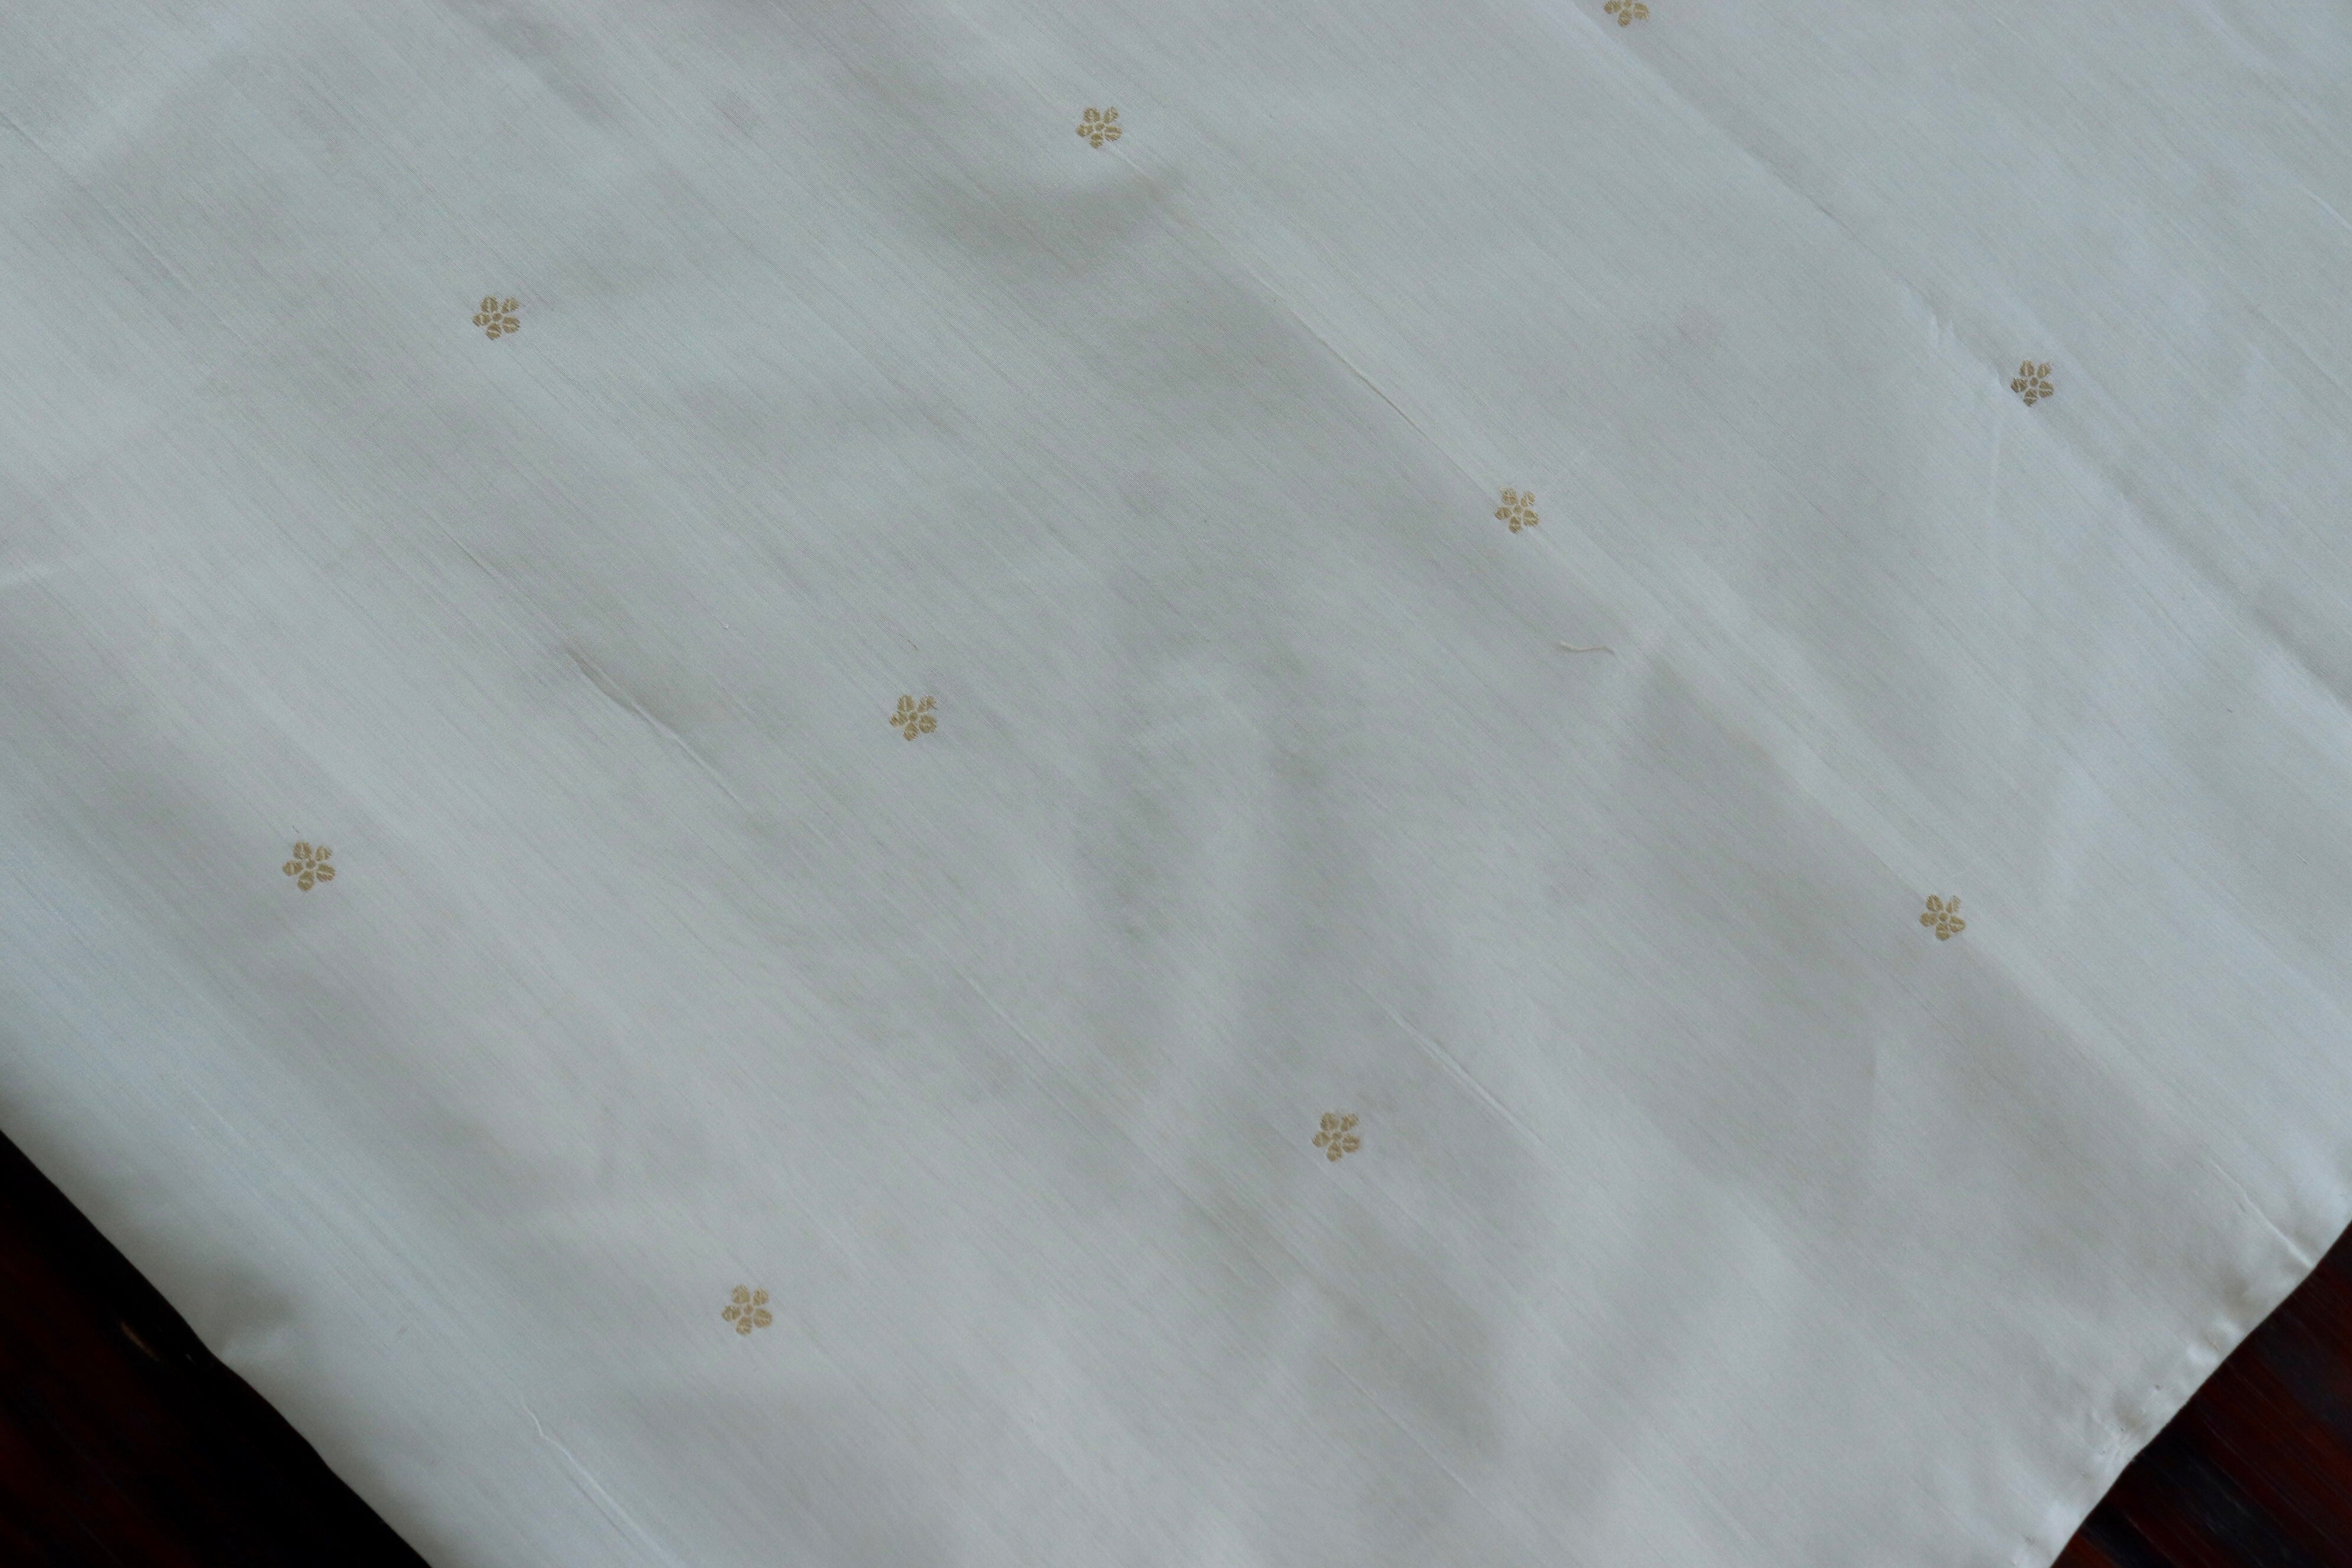 Handloom, Banarasi Handloom Saree, Alfi Saree, Tilfi Saree, Tilfi Saree Banaras, Tilfi, Banarasi Bunkar, Banarasi Bridal Wear, BridalWear, Banarasi Handloom Banarasi White Floral Motif Silk By Cotton Handloom Banarasi Fabric Banarasi Saree